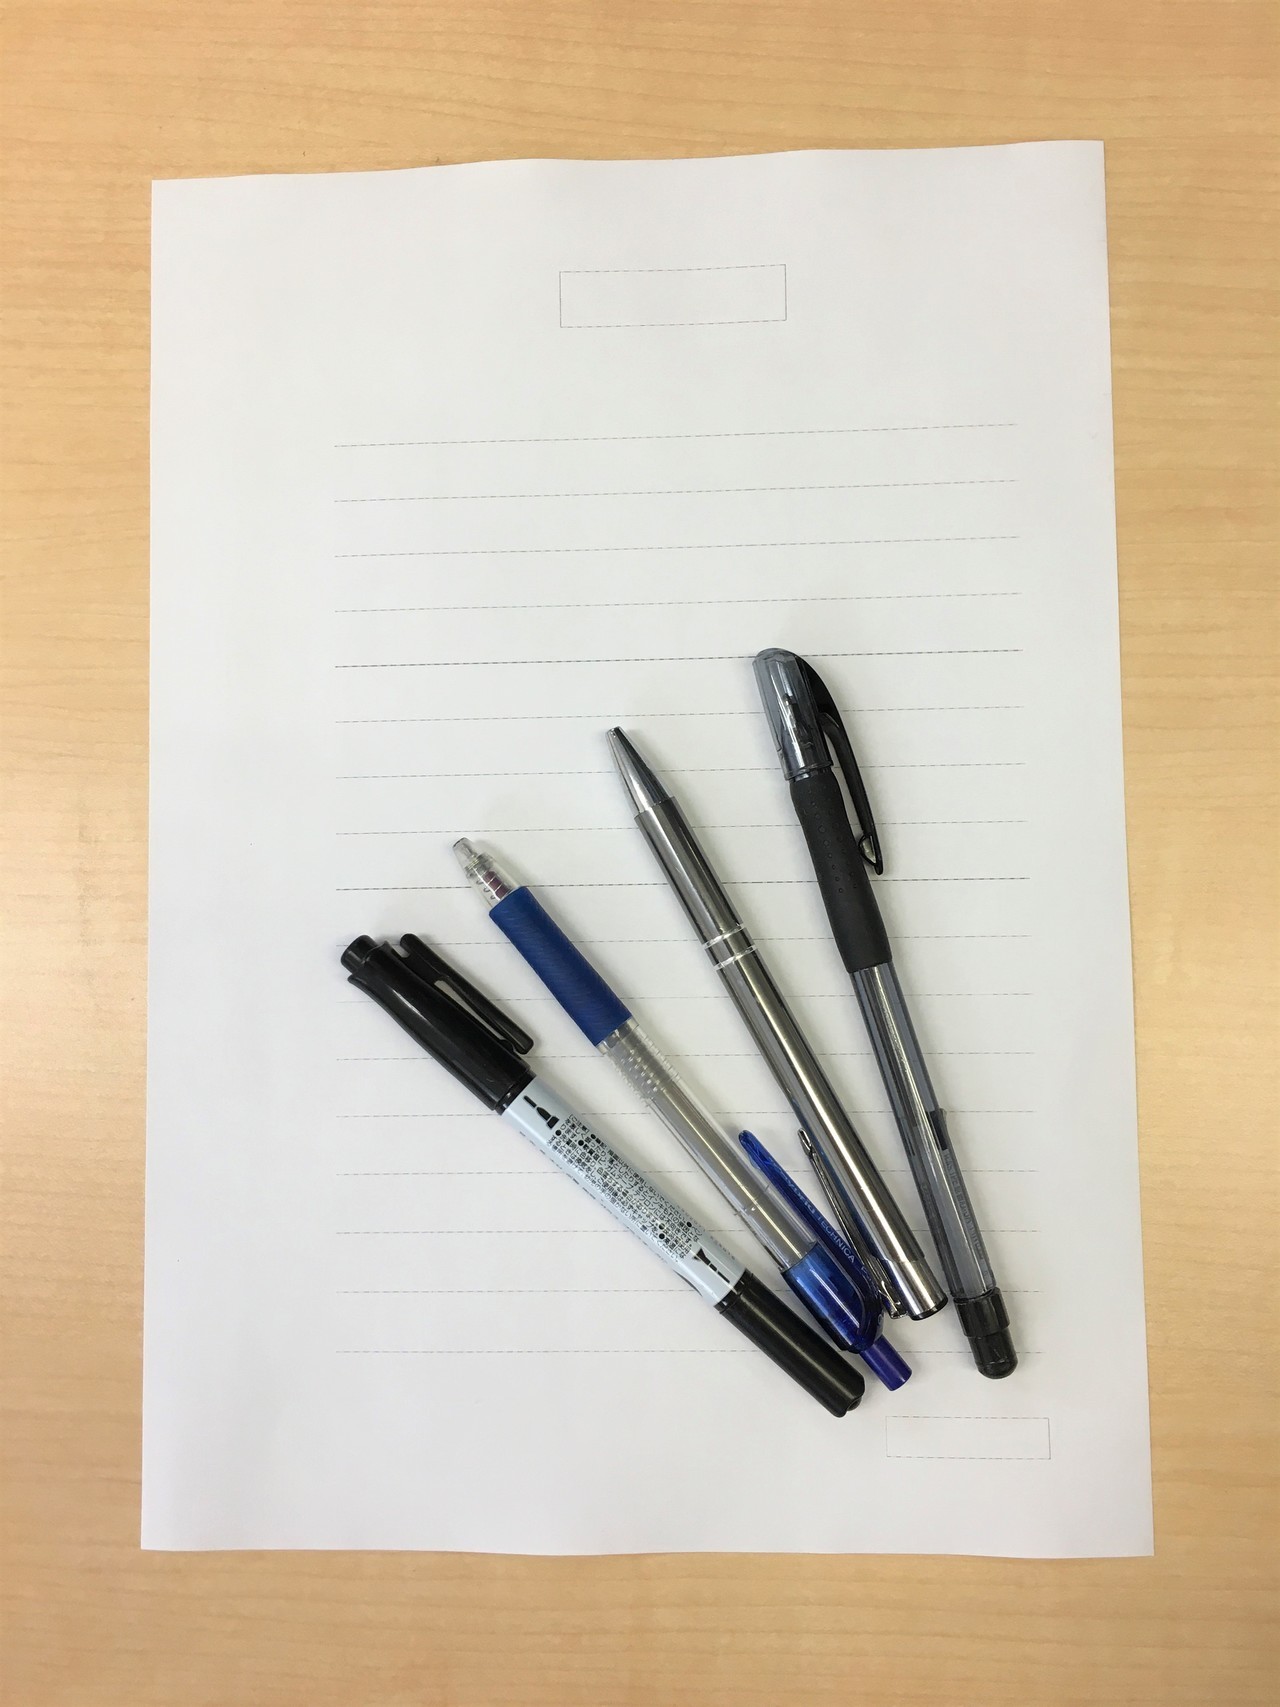 自筆証書遺言に使用する用紙とペンの例